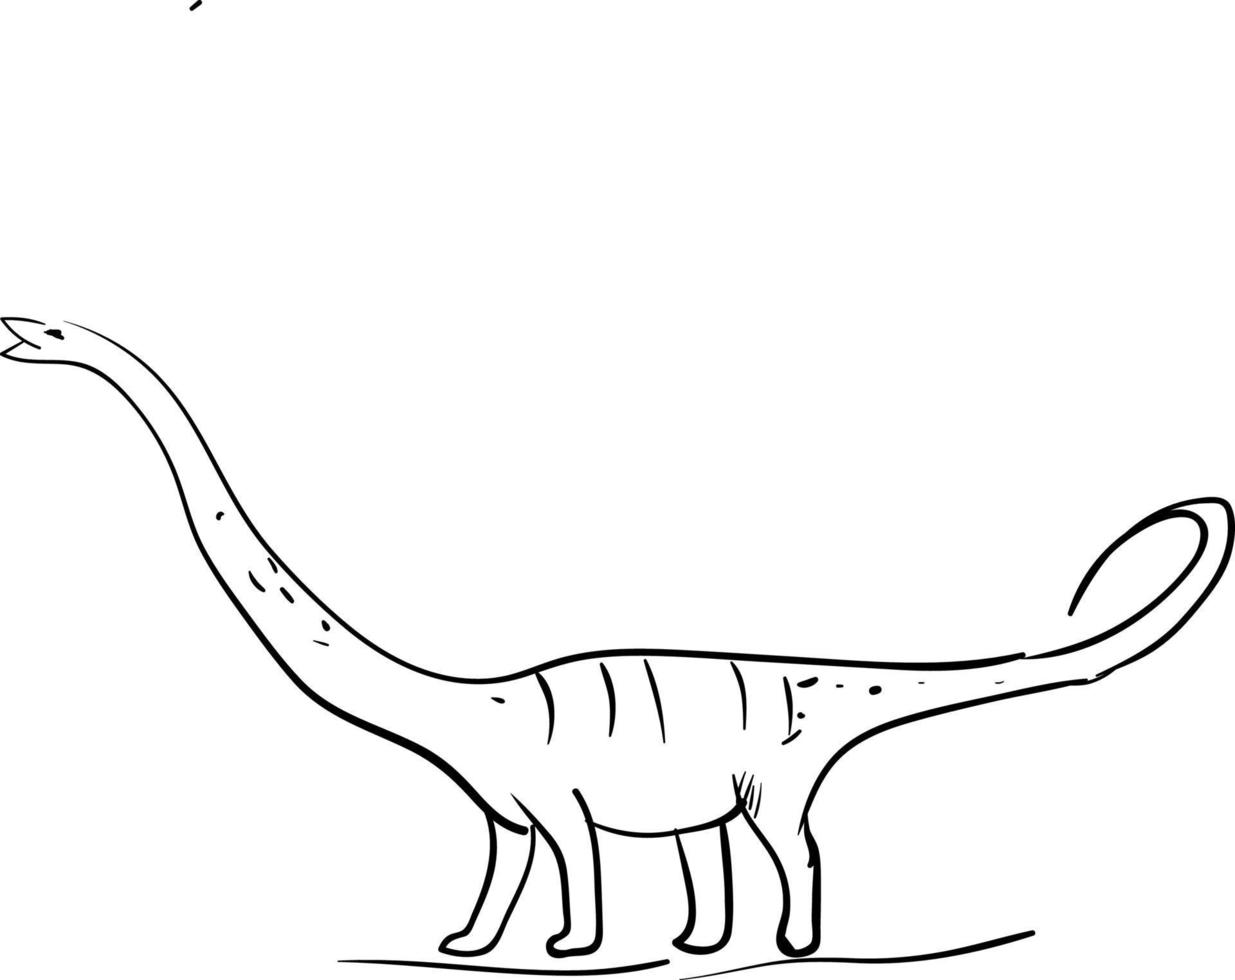 desenho de dinossauro de pescoço longo, ilustração, vetor em fundo branco.